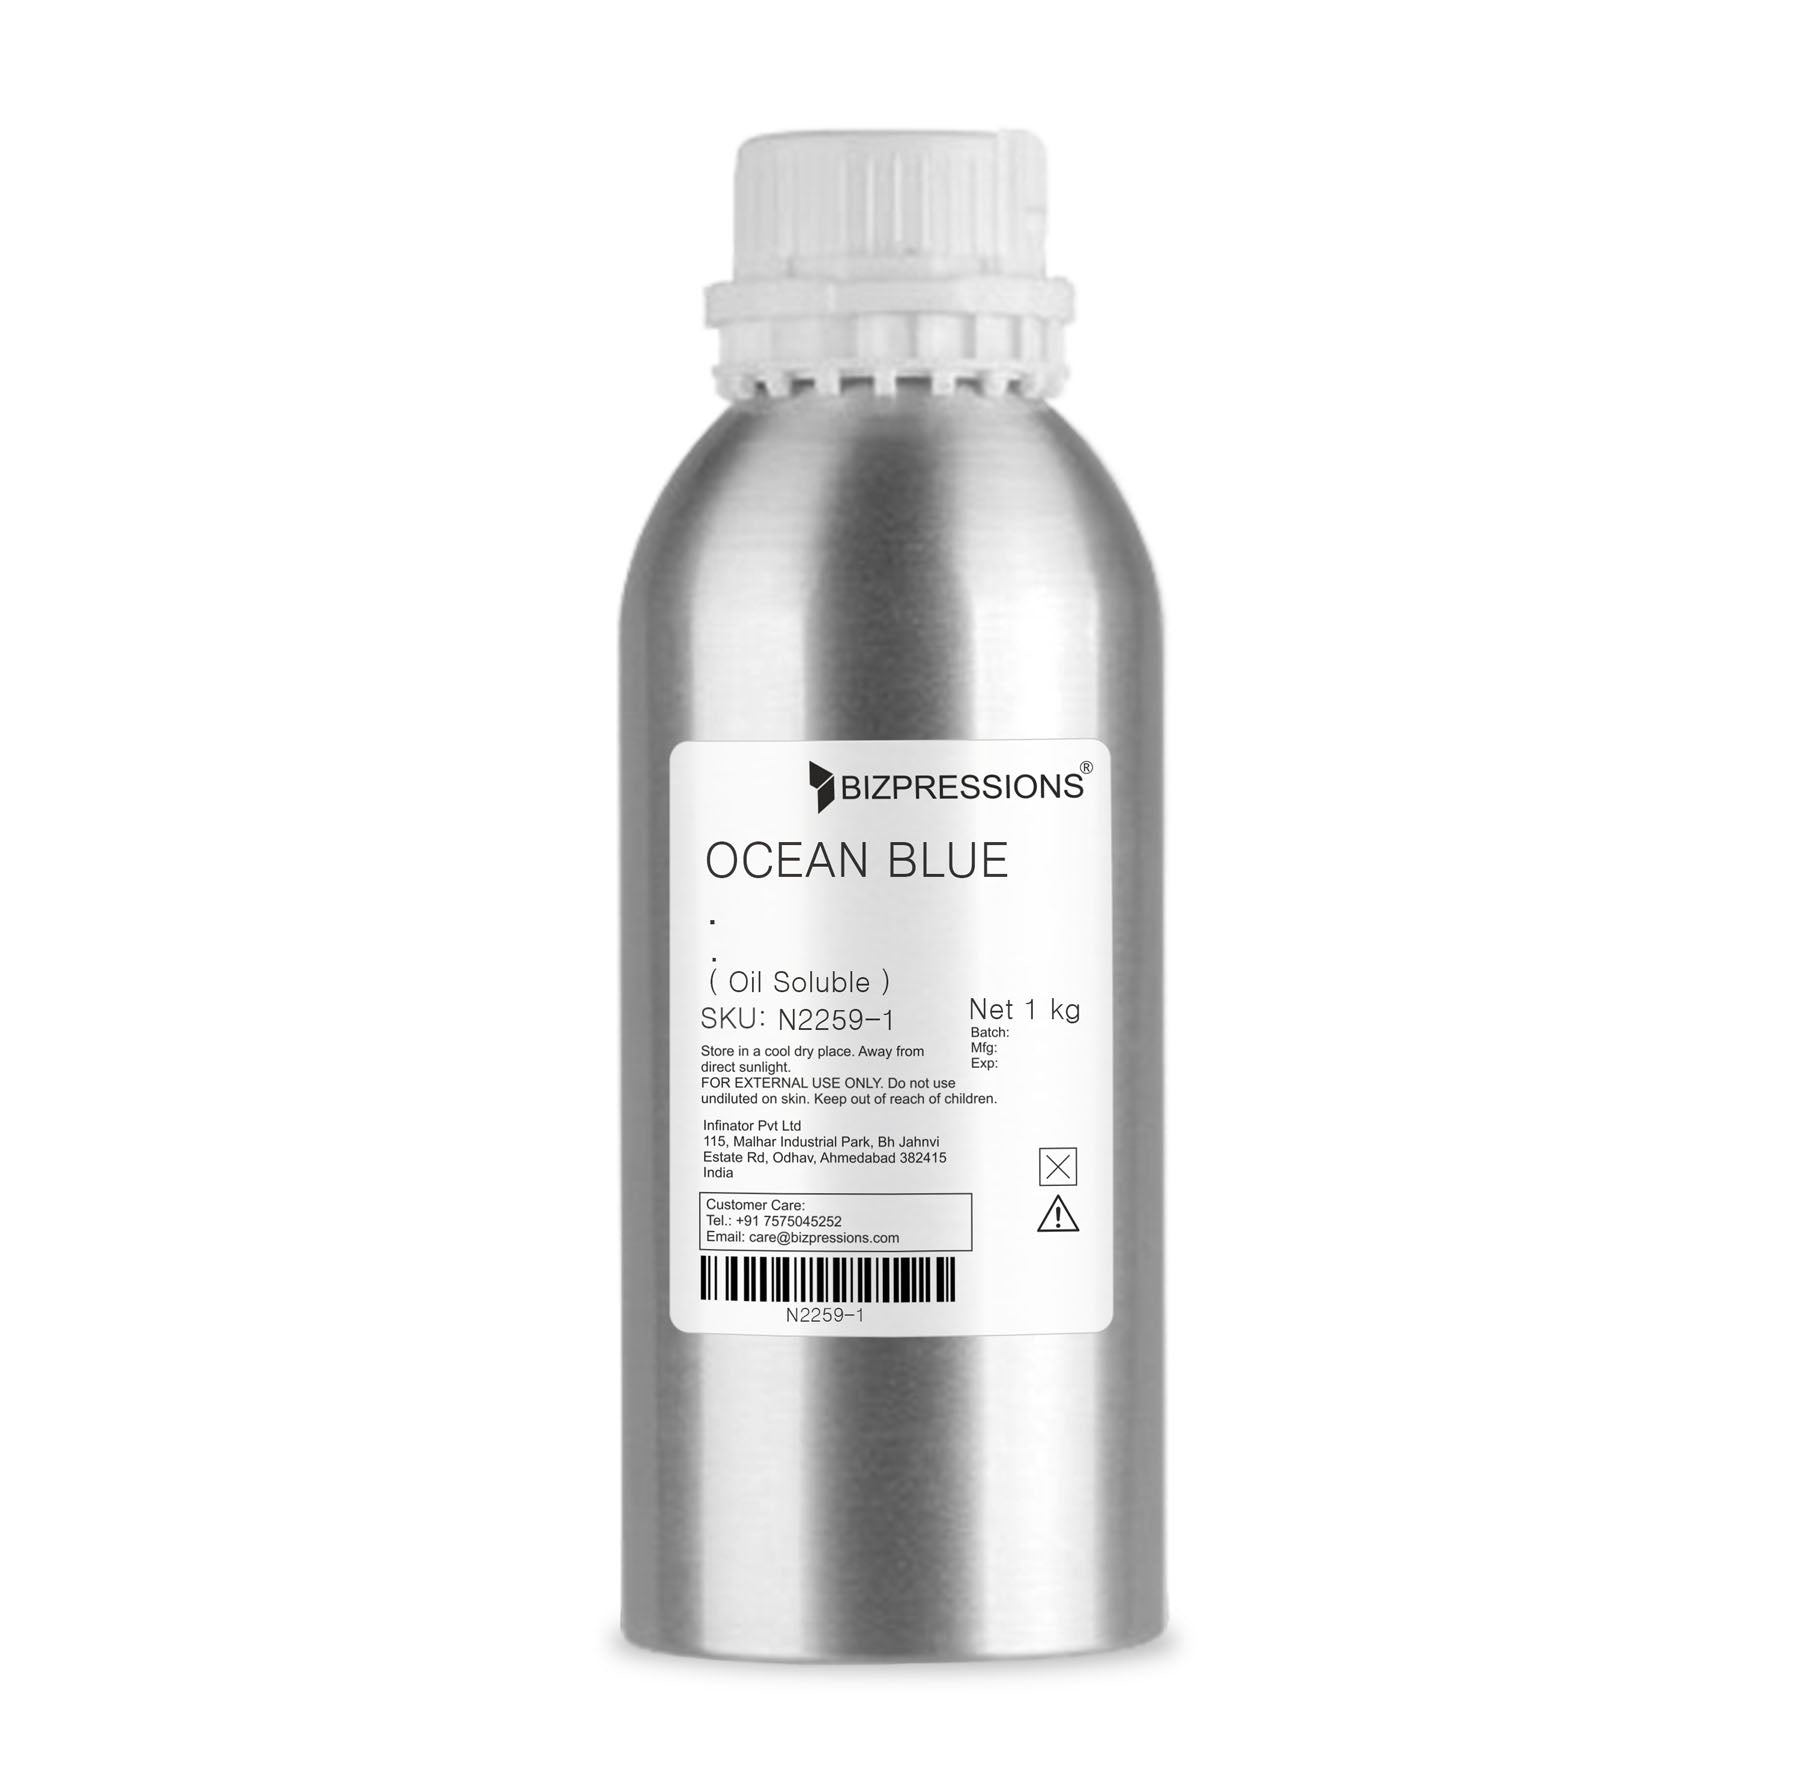 OCEAN BLUE - Fragrance ( Oil Soluble ) - 1 kg